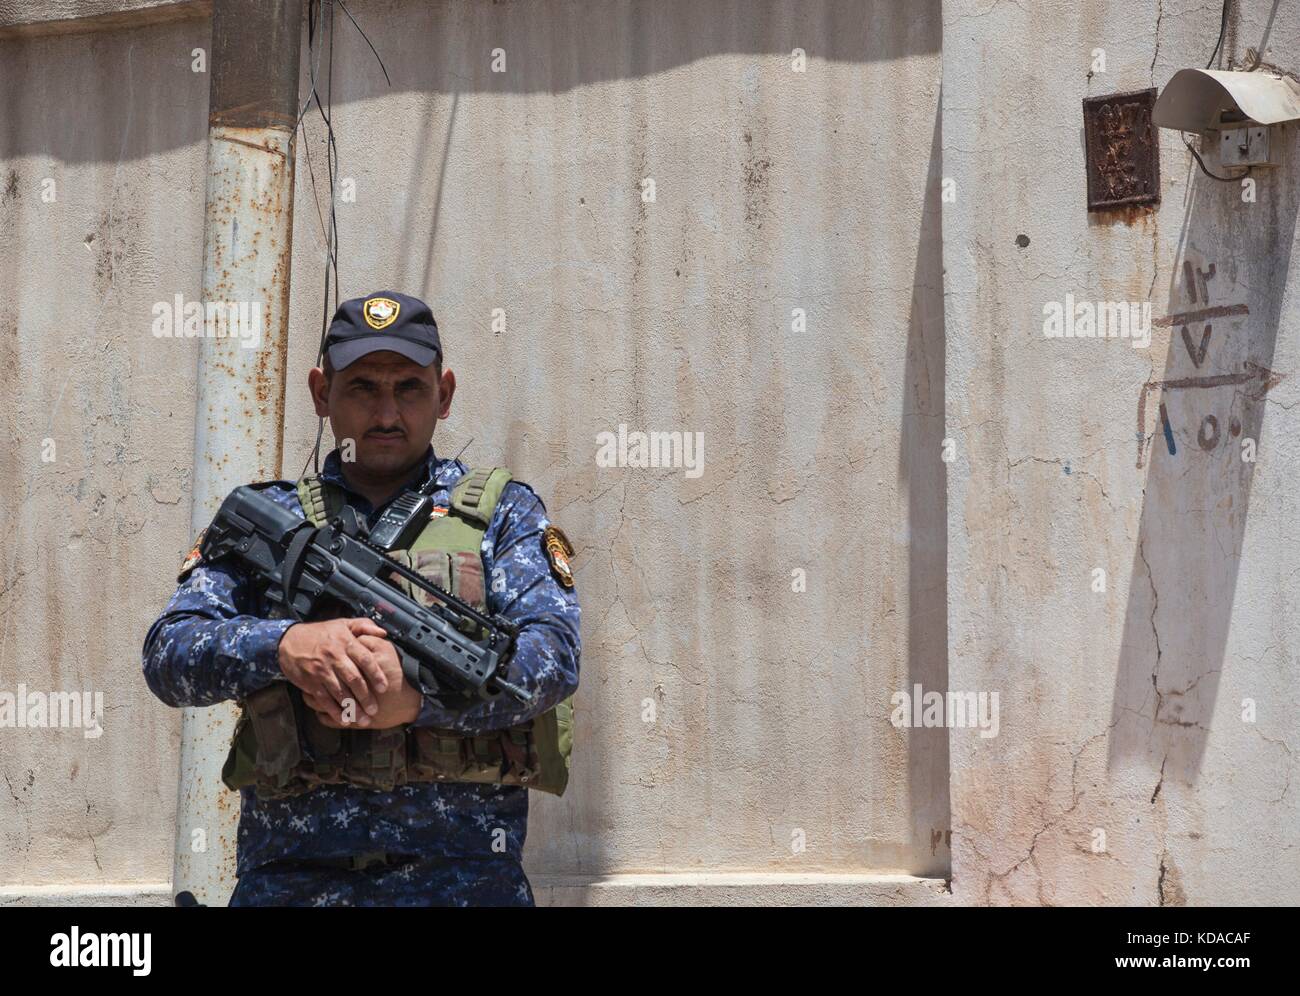 Eine irakische Bundespolizeioffizier bewacht eine Patrouille base Juni 29, 2017 in Mosul, Irak. Es verfügt über einen kombinierten Bemühungen zwischen US-amerikanischen und Irakischen Streitkräften im Bereich isis Extremisten zu besiegen. Stockfoto